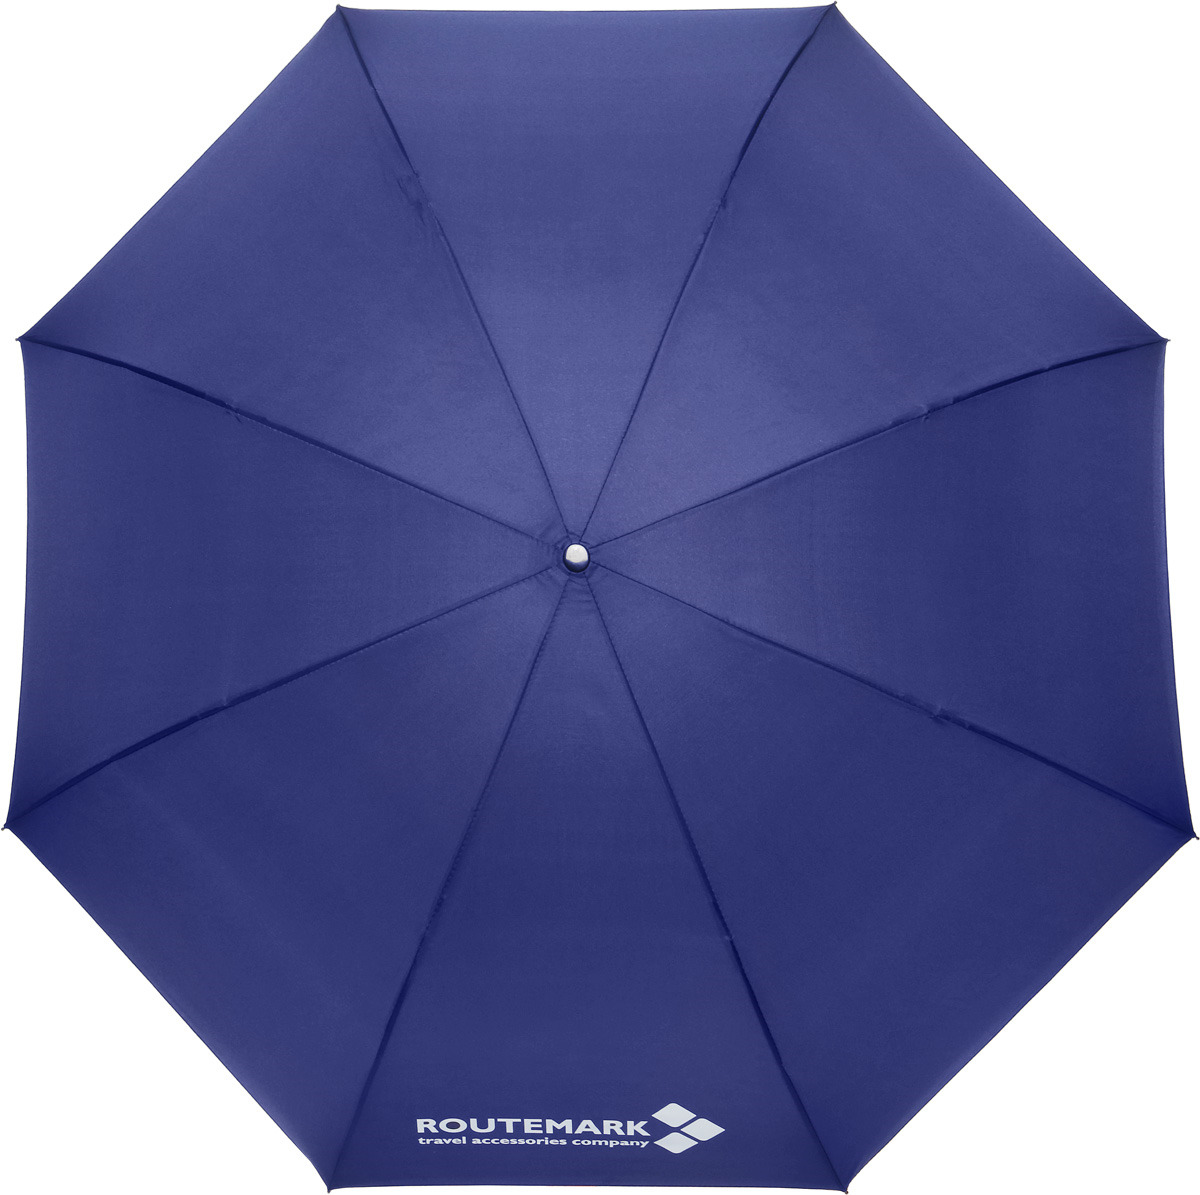 Зонт Routemark, реверсивный, цвет: темно-синий, оранжевый. zn-revers